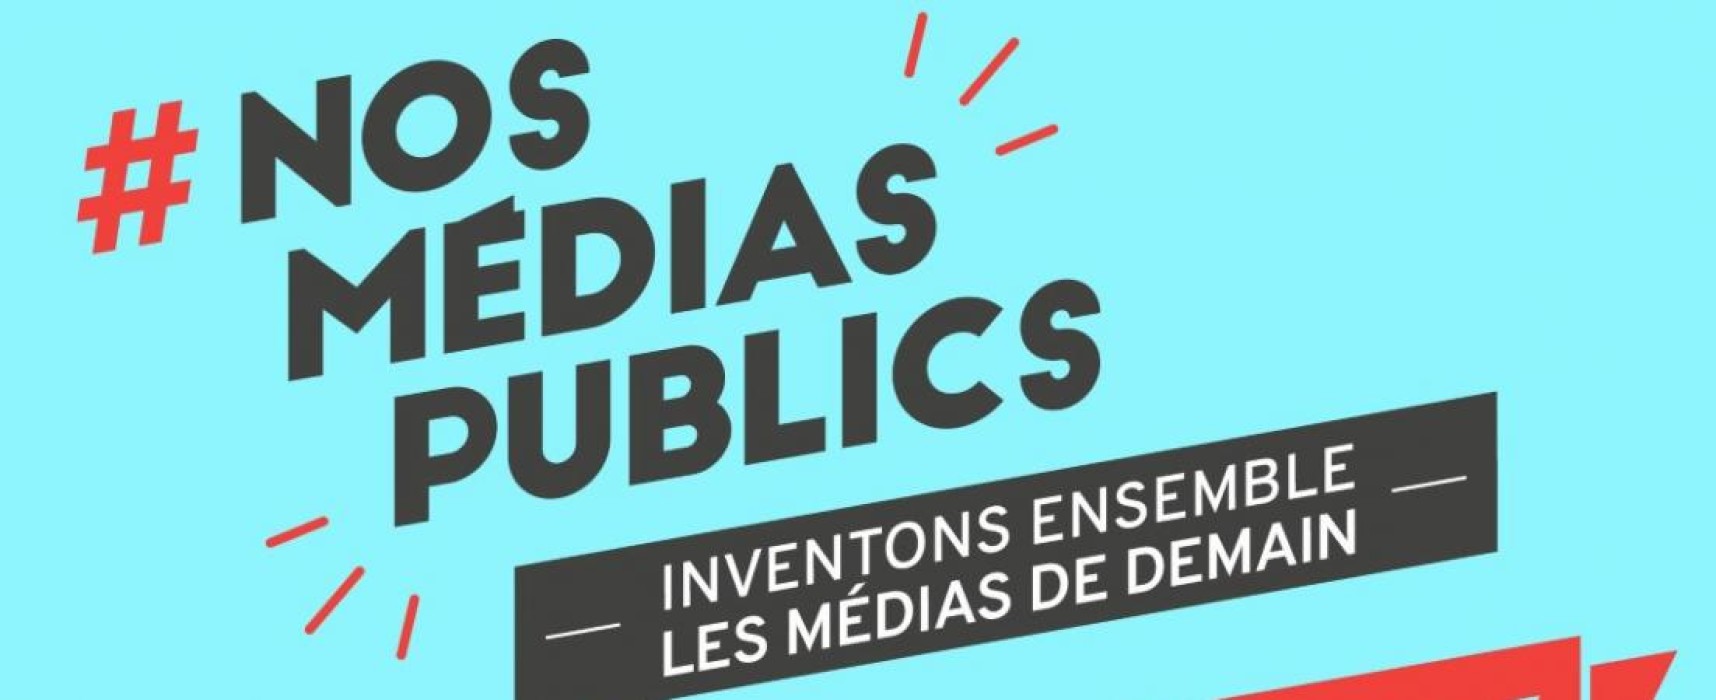 #NosMédiasPublics : participez à la consultation citoyenne pour imaginer les médias de demain – Septembre 2020